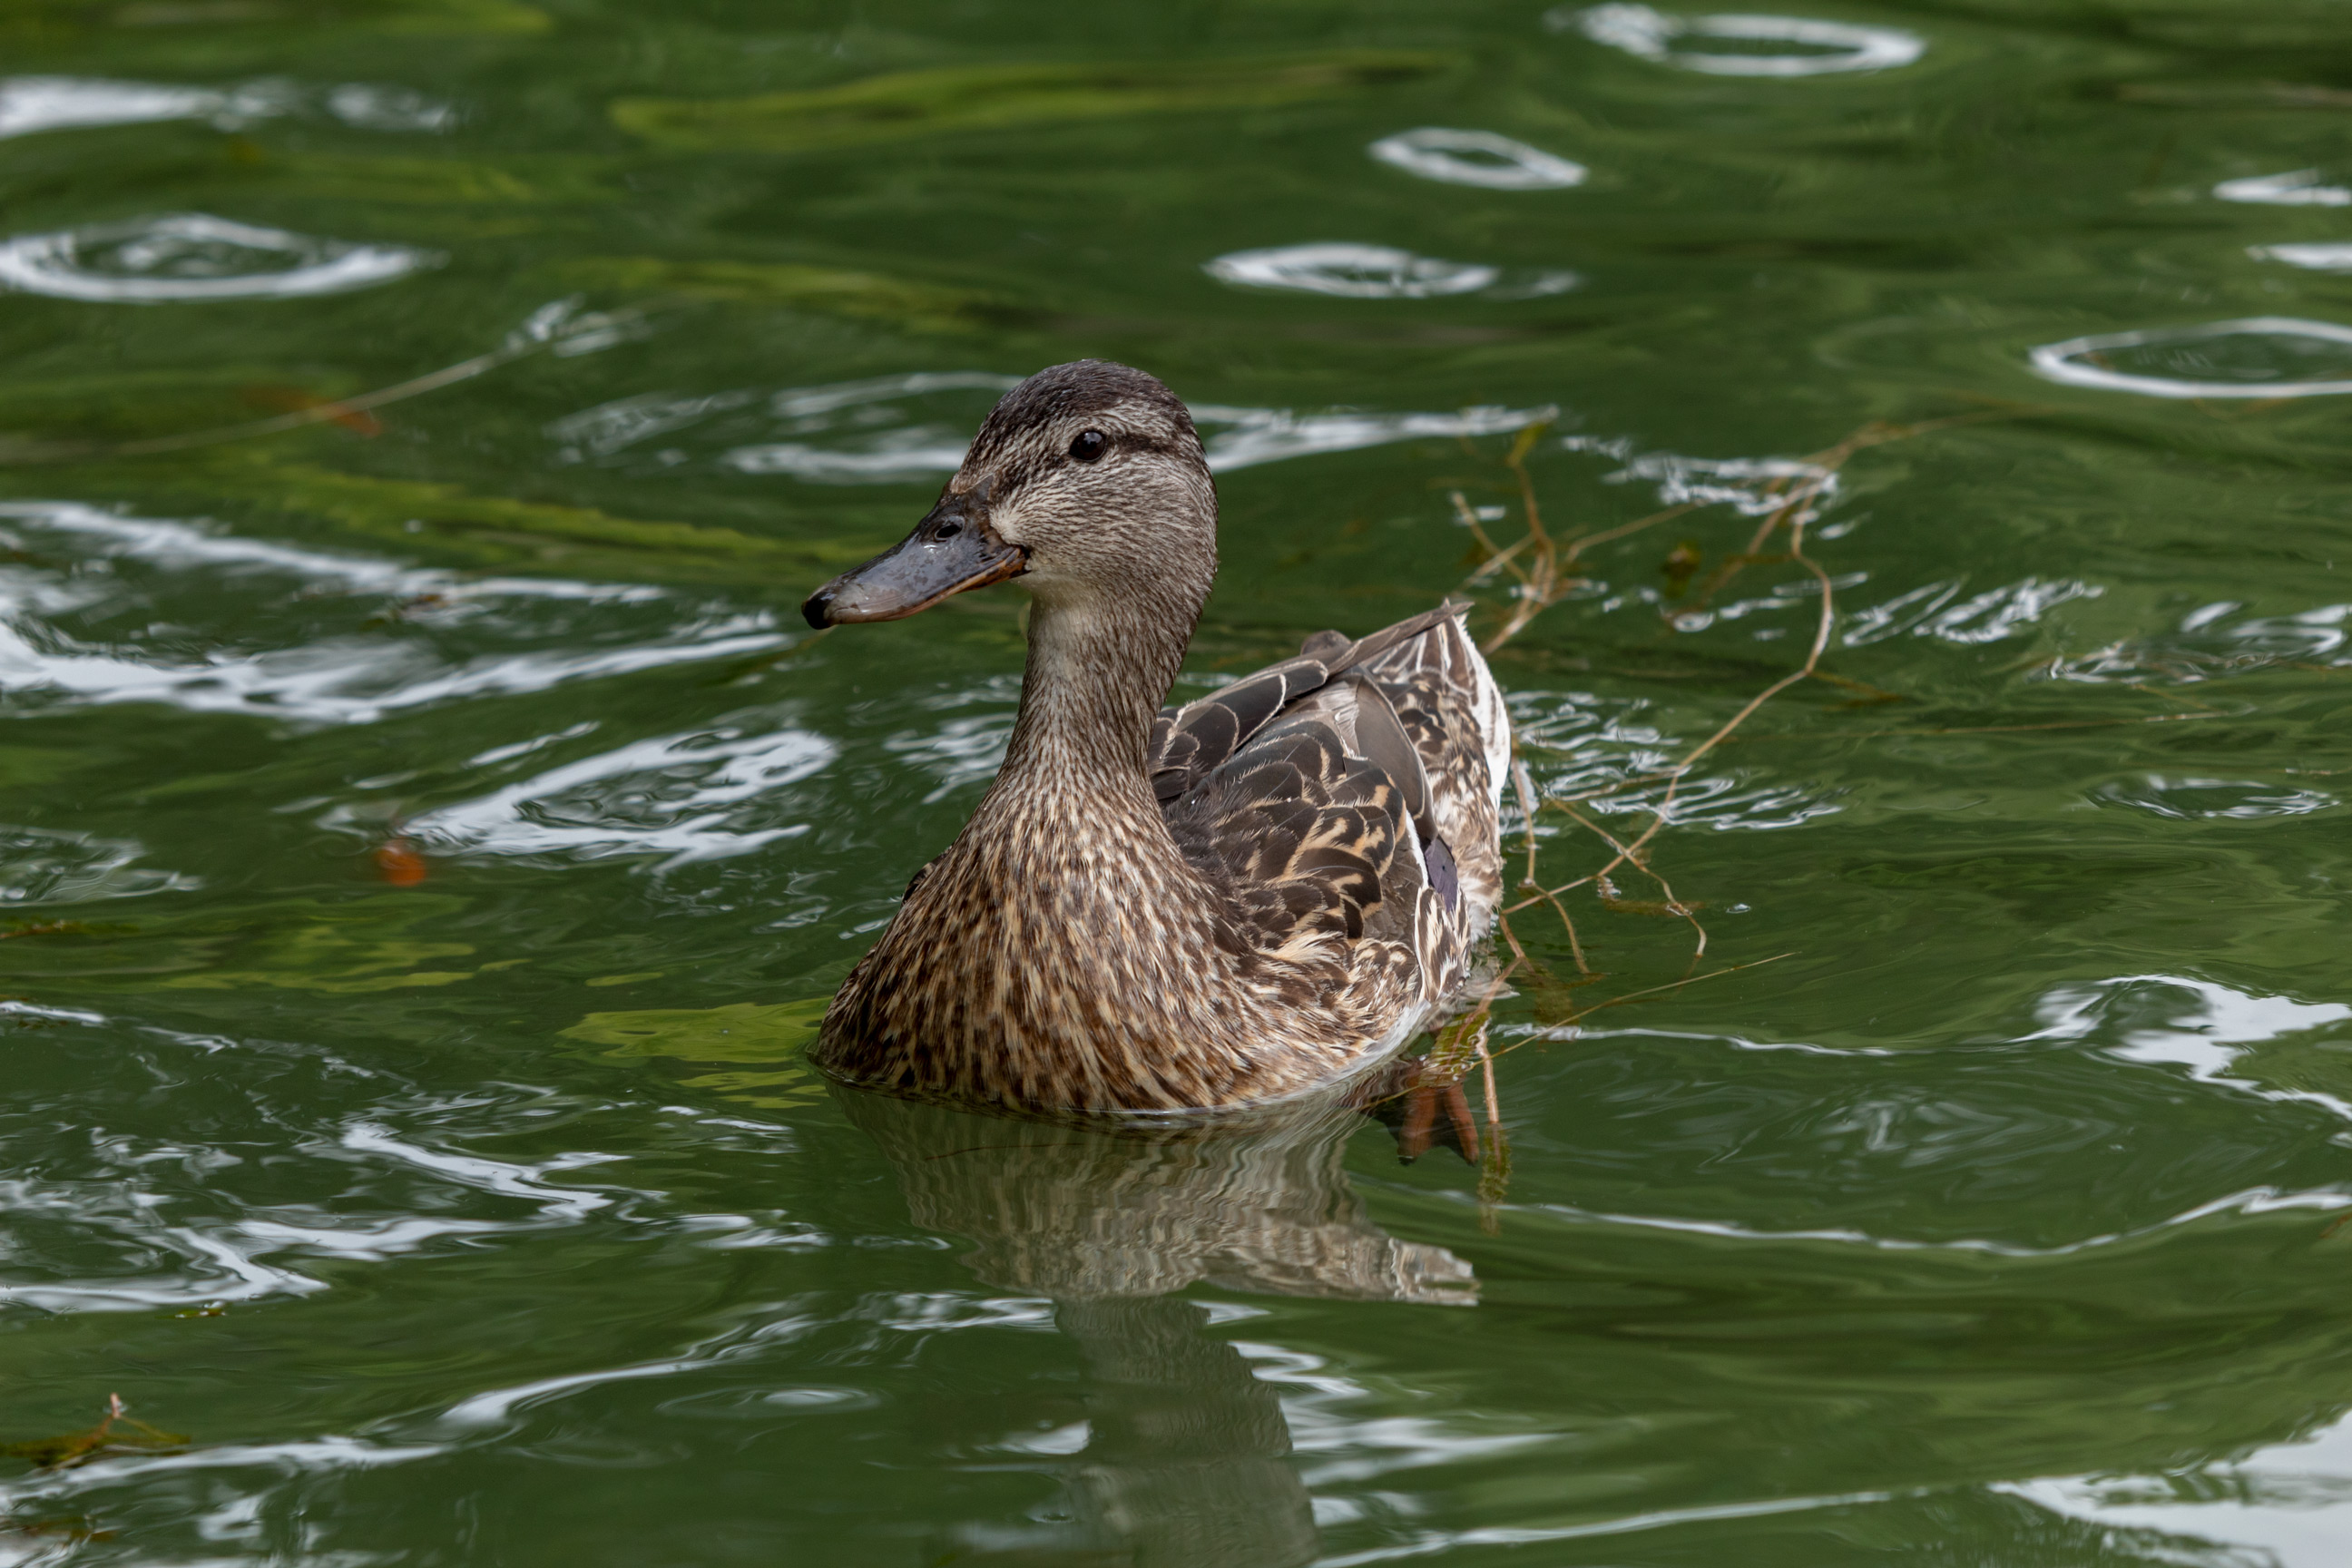 Mallard duck swimming